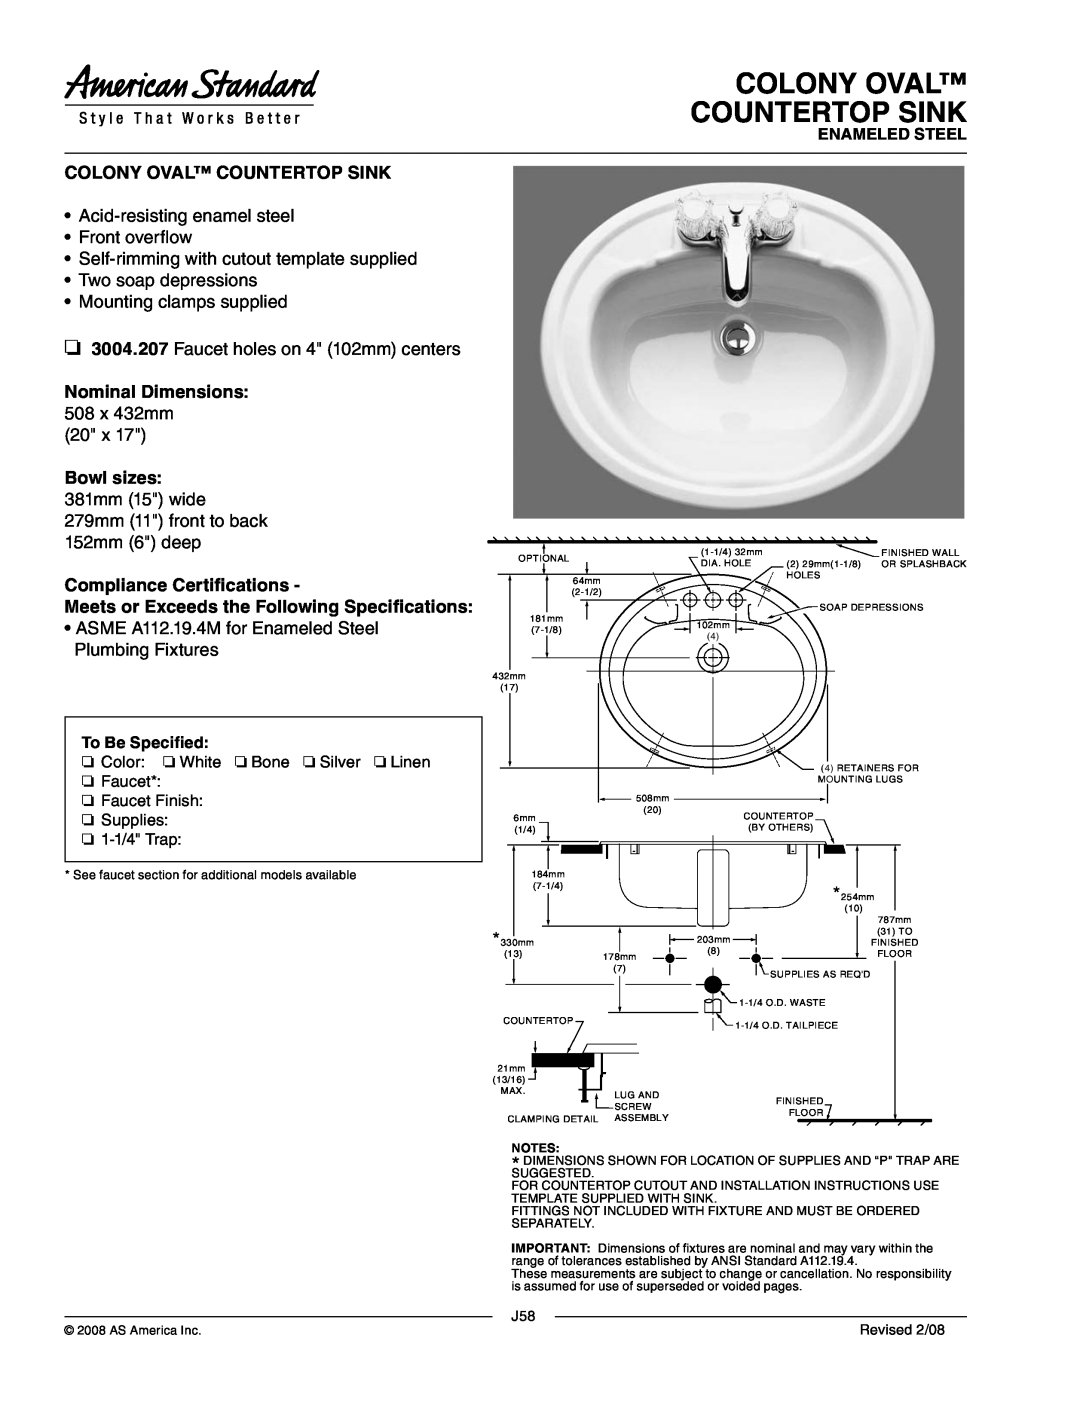 American Standard J58 dimensions Colony Oval Countertop Sink, Acid-resistingenamel steel Front overflow, Enameled Steel 